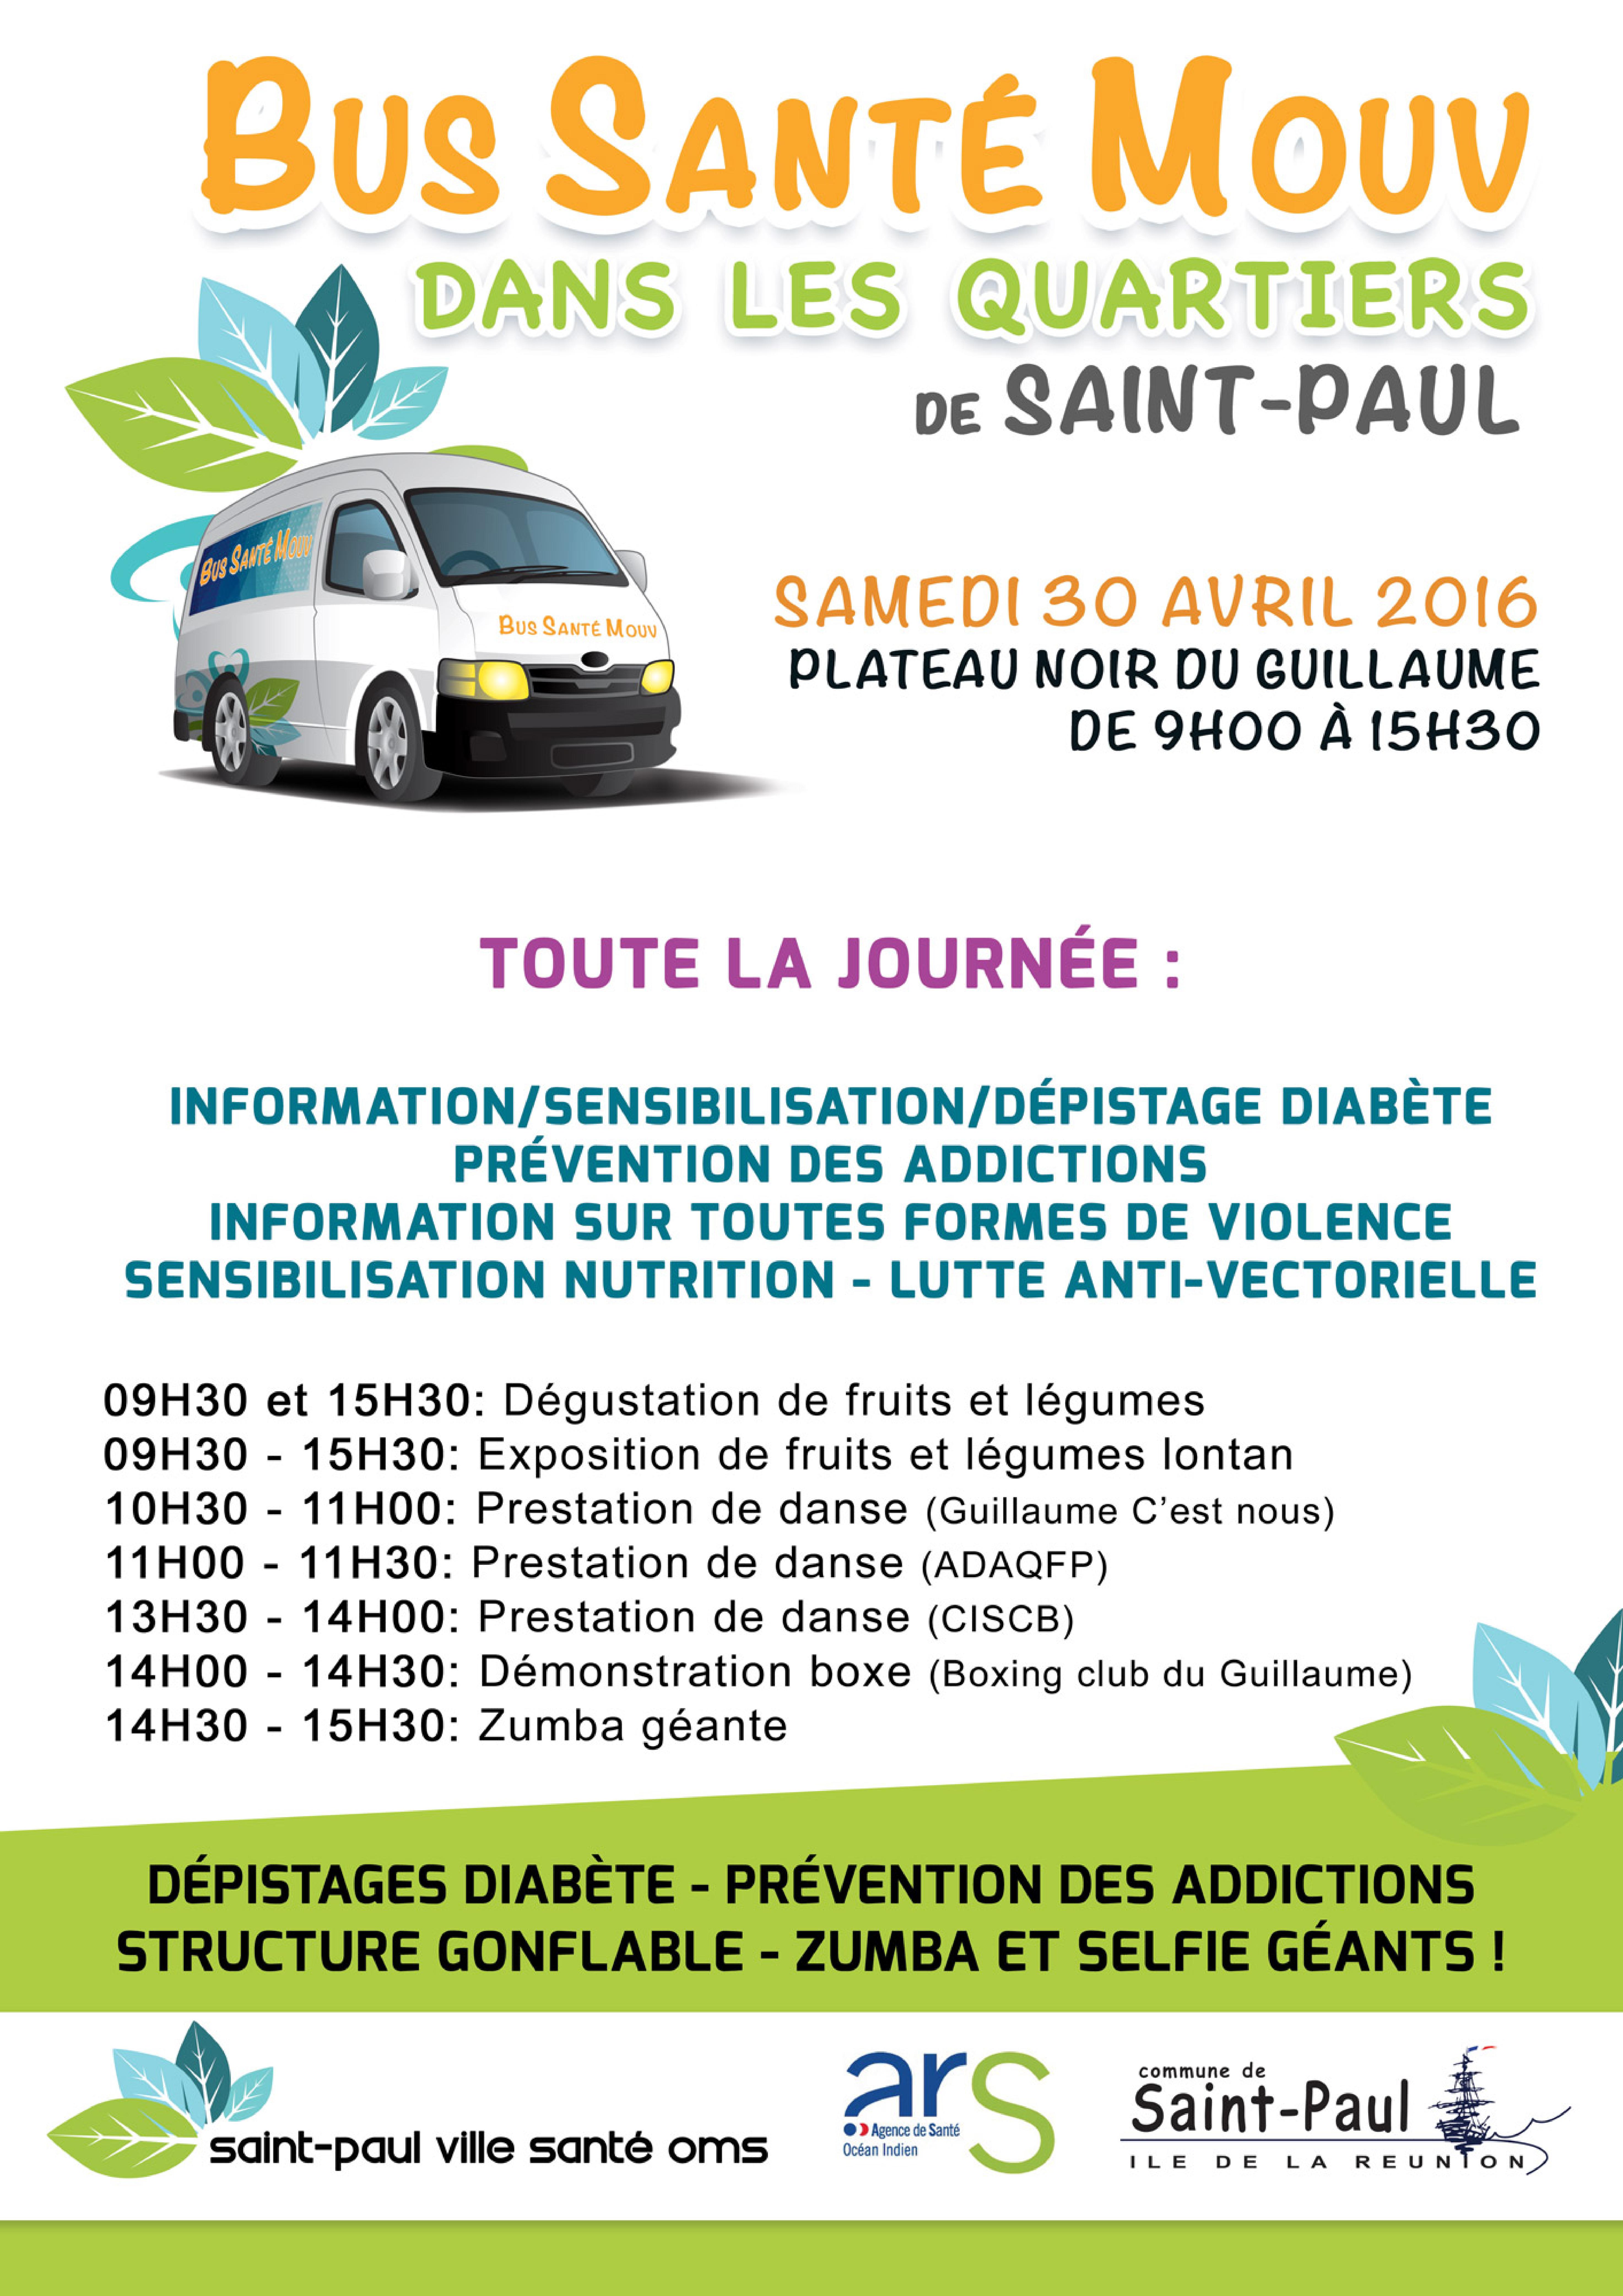 Saint-Paul: Opération Bus santé Mouv' ce samedi